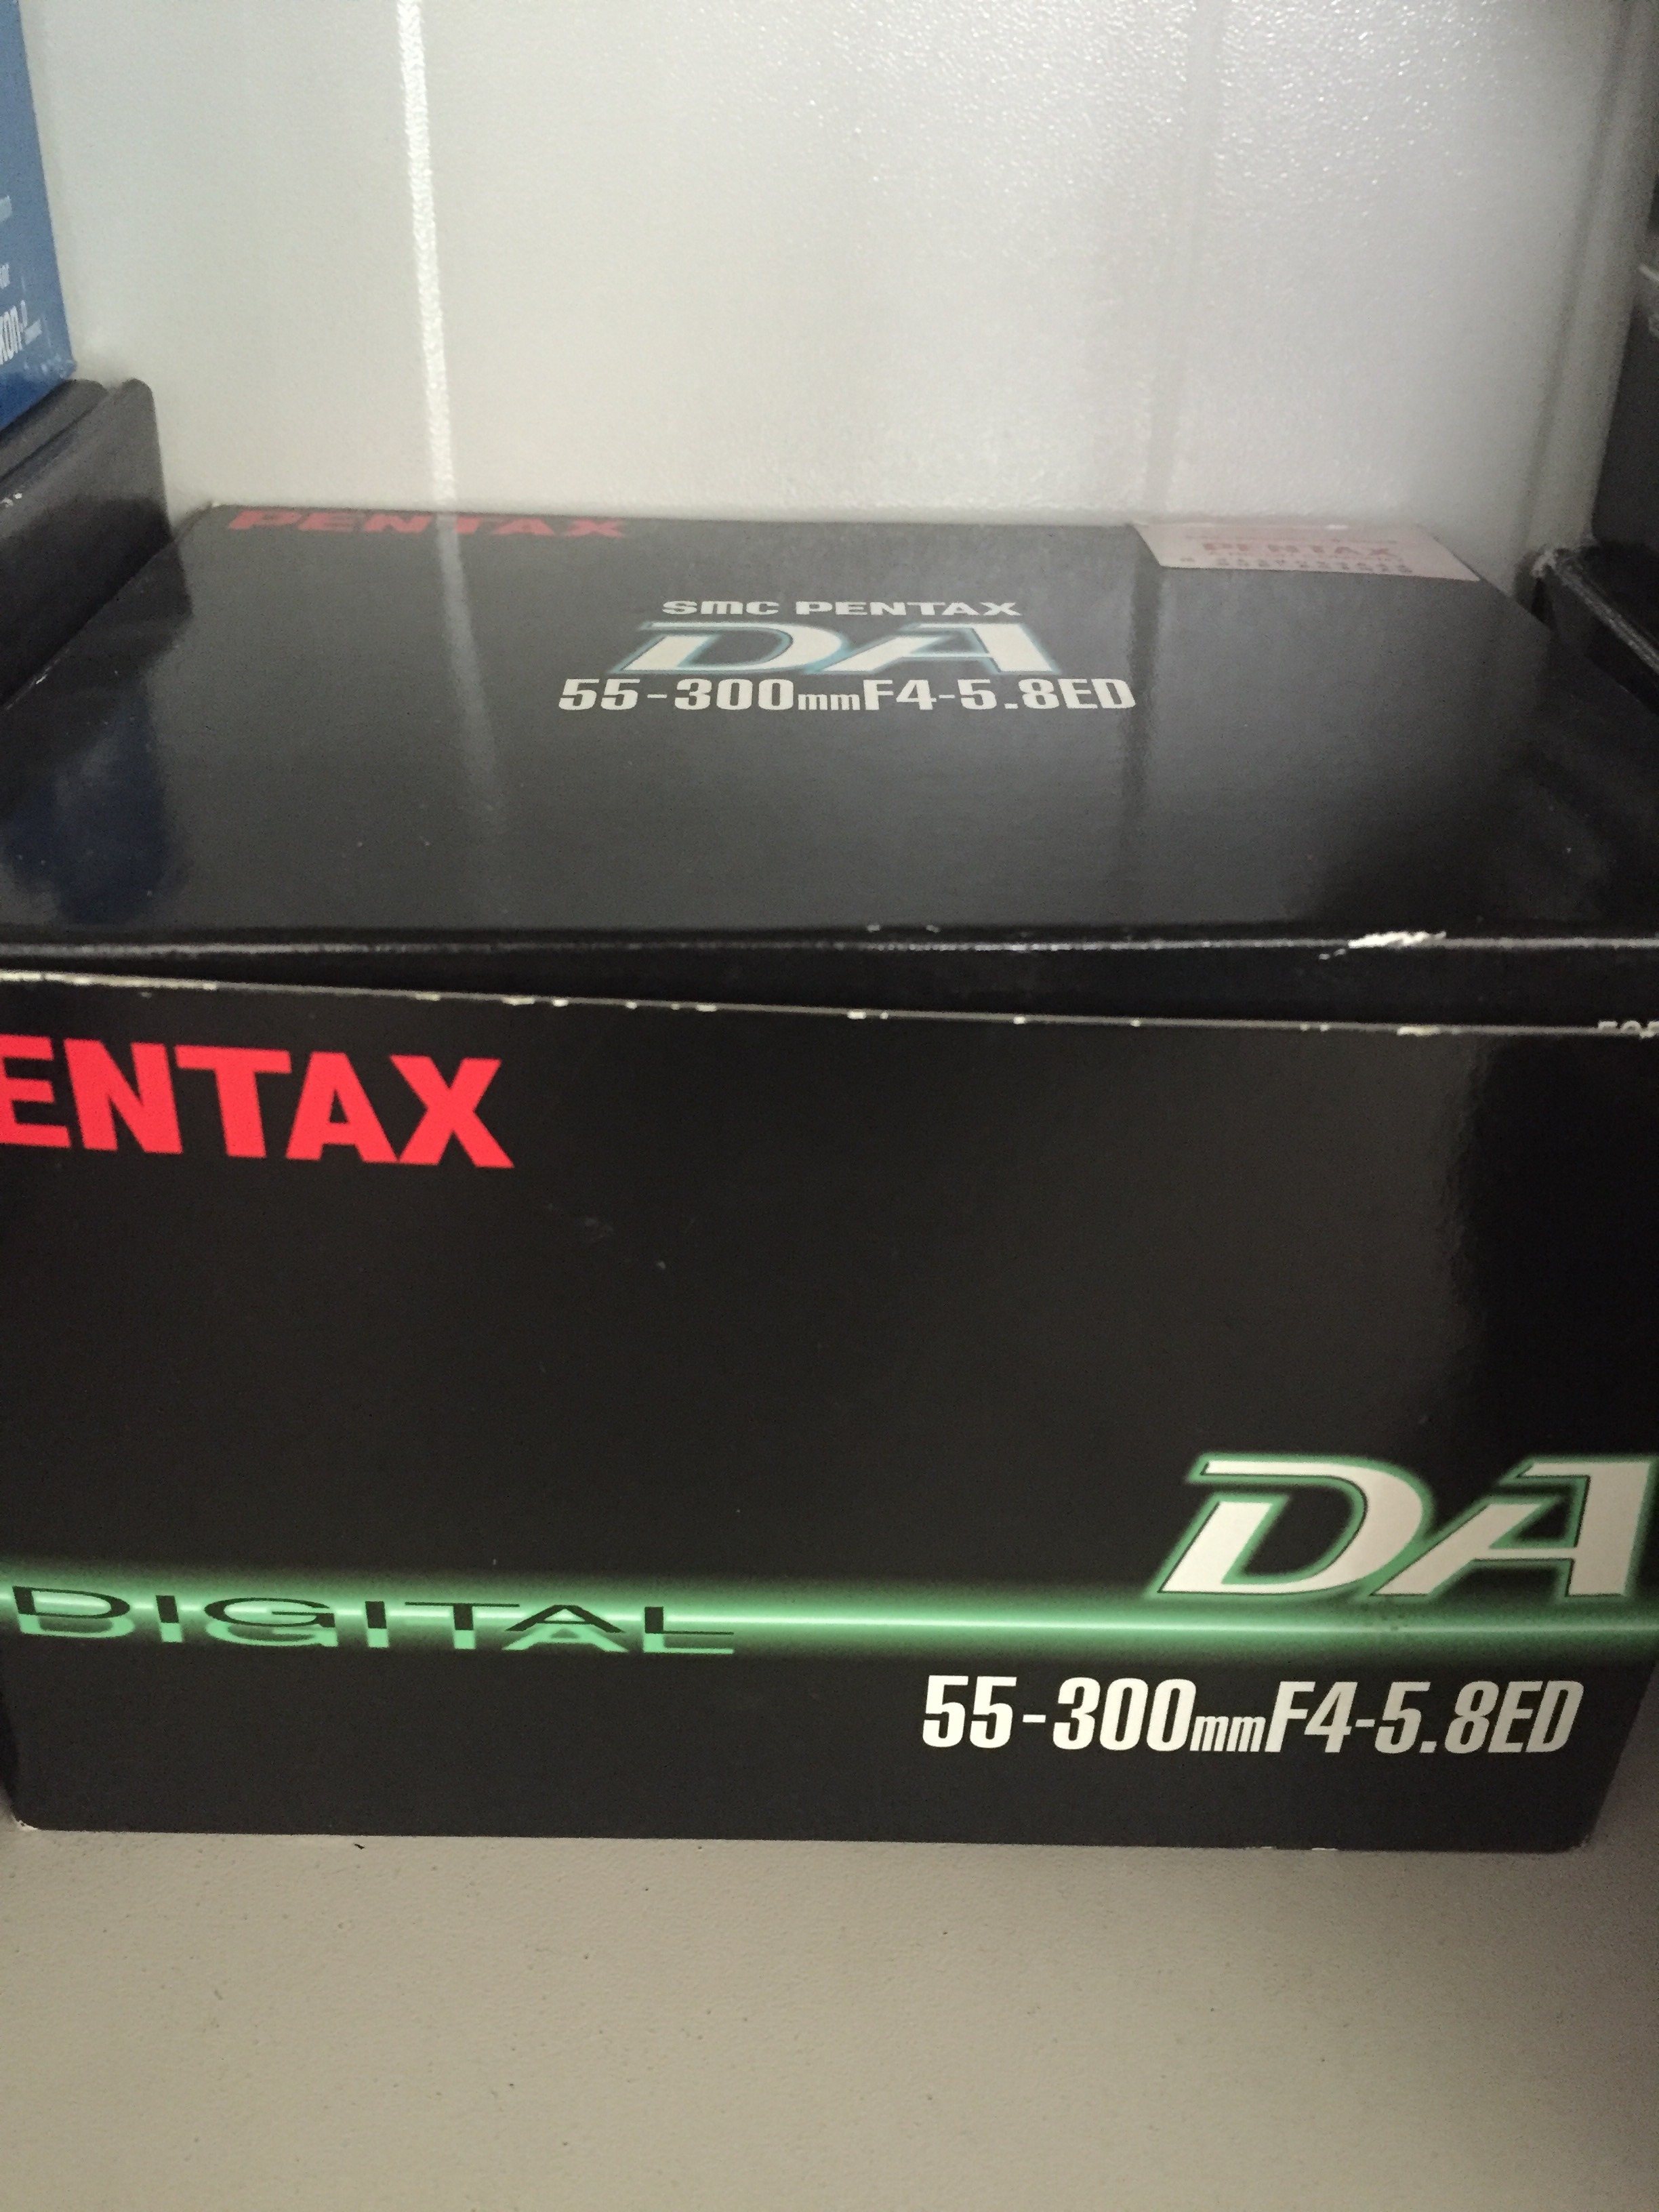  Pentax DA 1:4-5.8 55-300mm